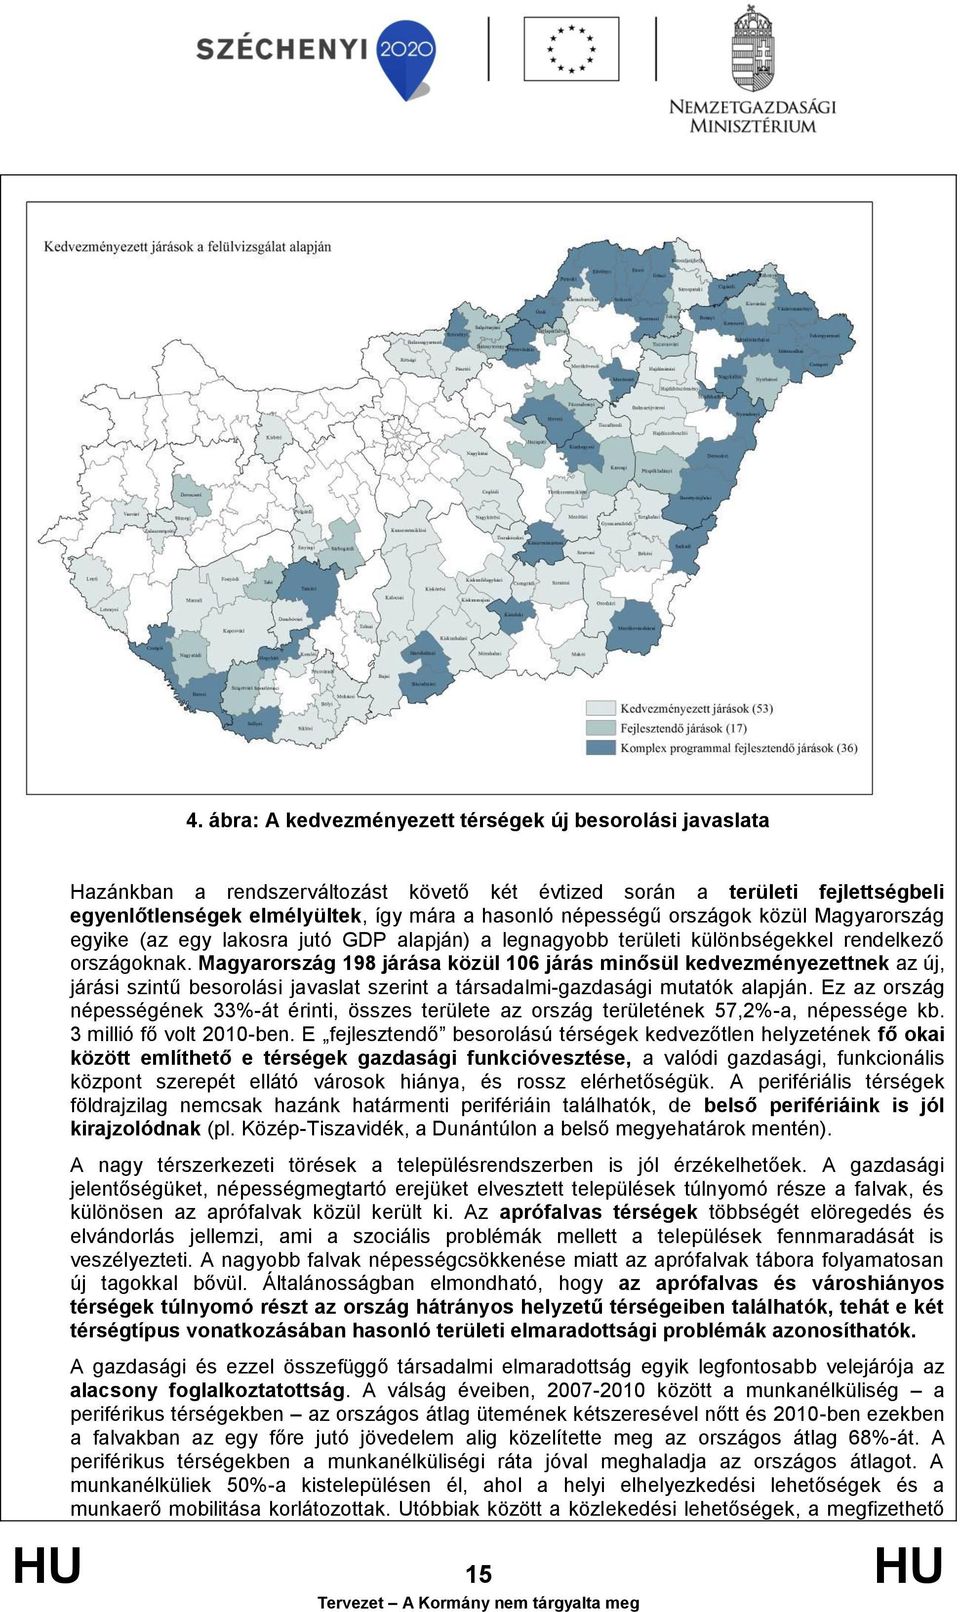 Magyarország 198 járása közül 106 járás minősül kedvezményezettnek az új, járási szintű besorolási javaslat szerint a társadalmi-gazdasági mutatók alapján.